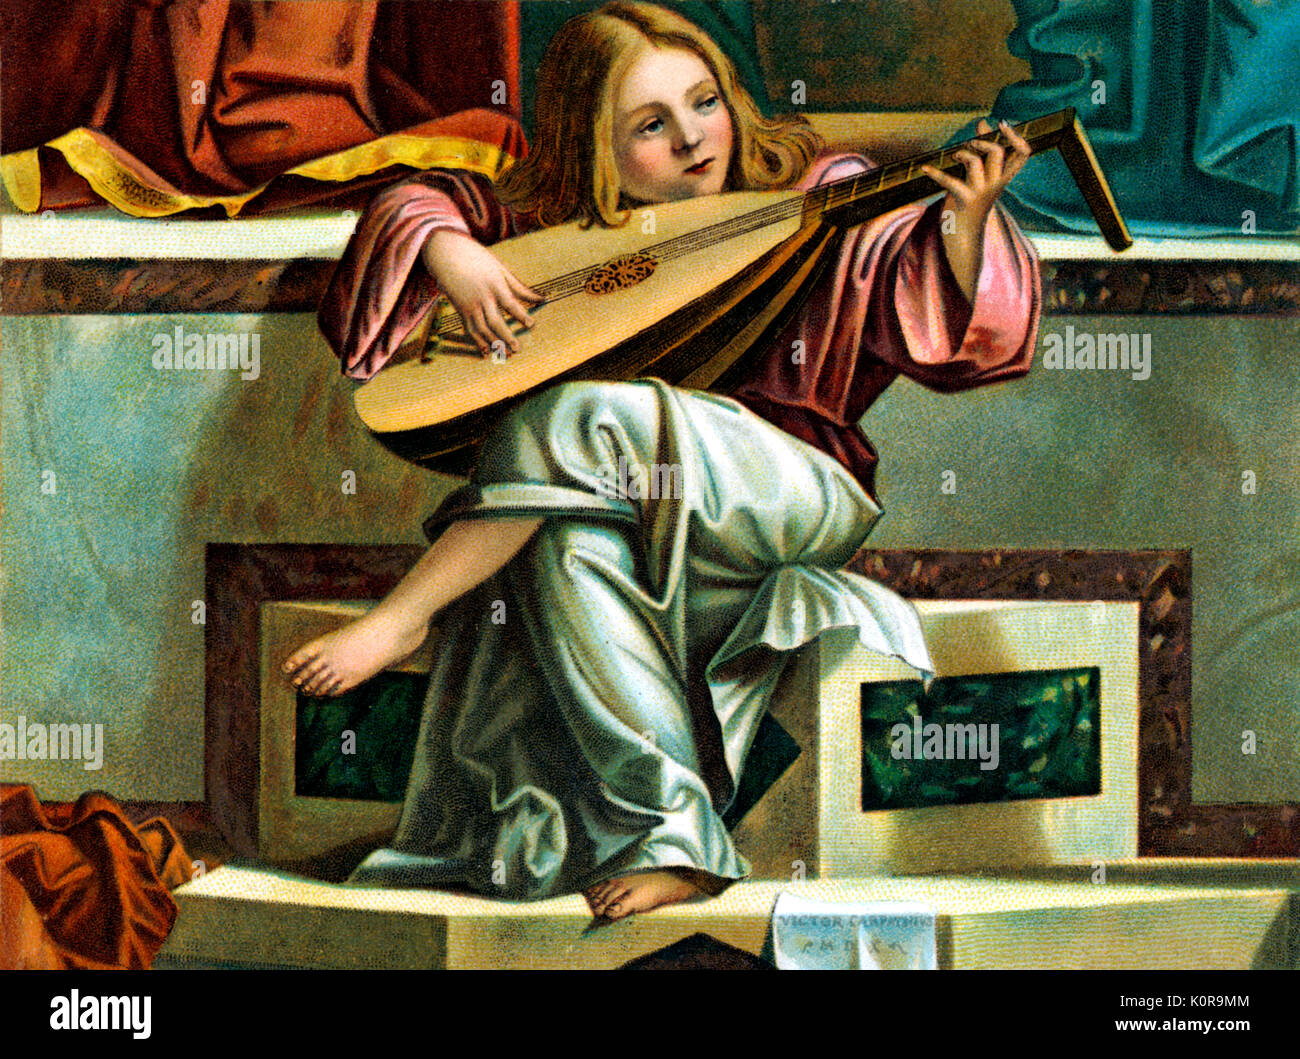 Von Vittore Carpaccio jungen lute Player. Ausschnitt aus "Die Darstellung Jesu im Tempel" 1510 von S. Giobbe altarpieice, Venedig. Junge Musiker sitzt an den Füßen von Maria und Jesus. Er stellt "Harmonie". Carpaccio (1489-1522) Renaissance. Italien Stockfoto